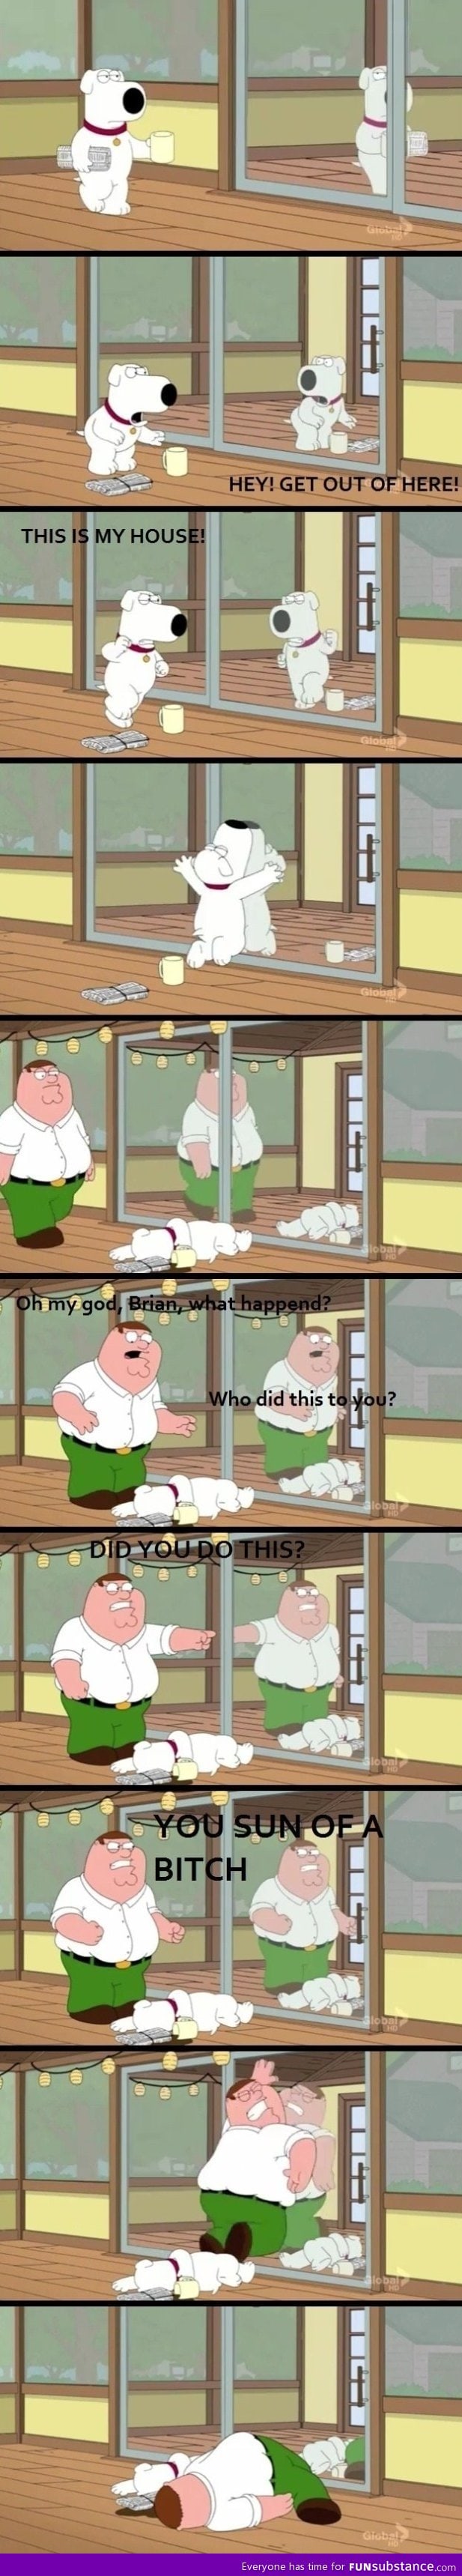 More Family Guy